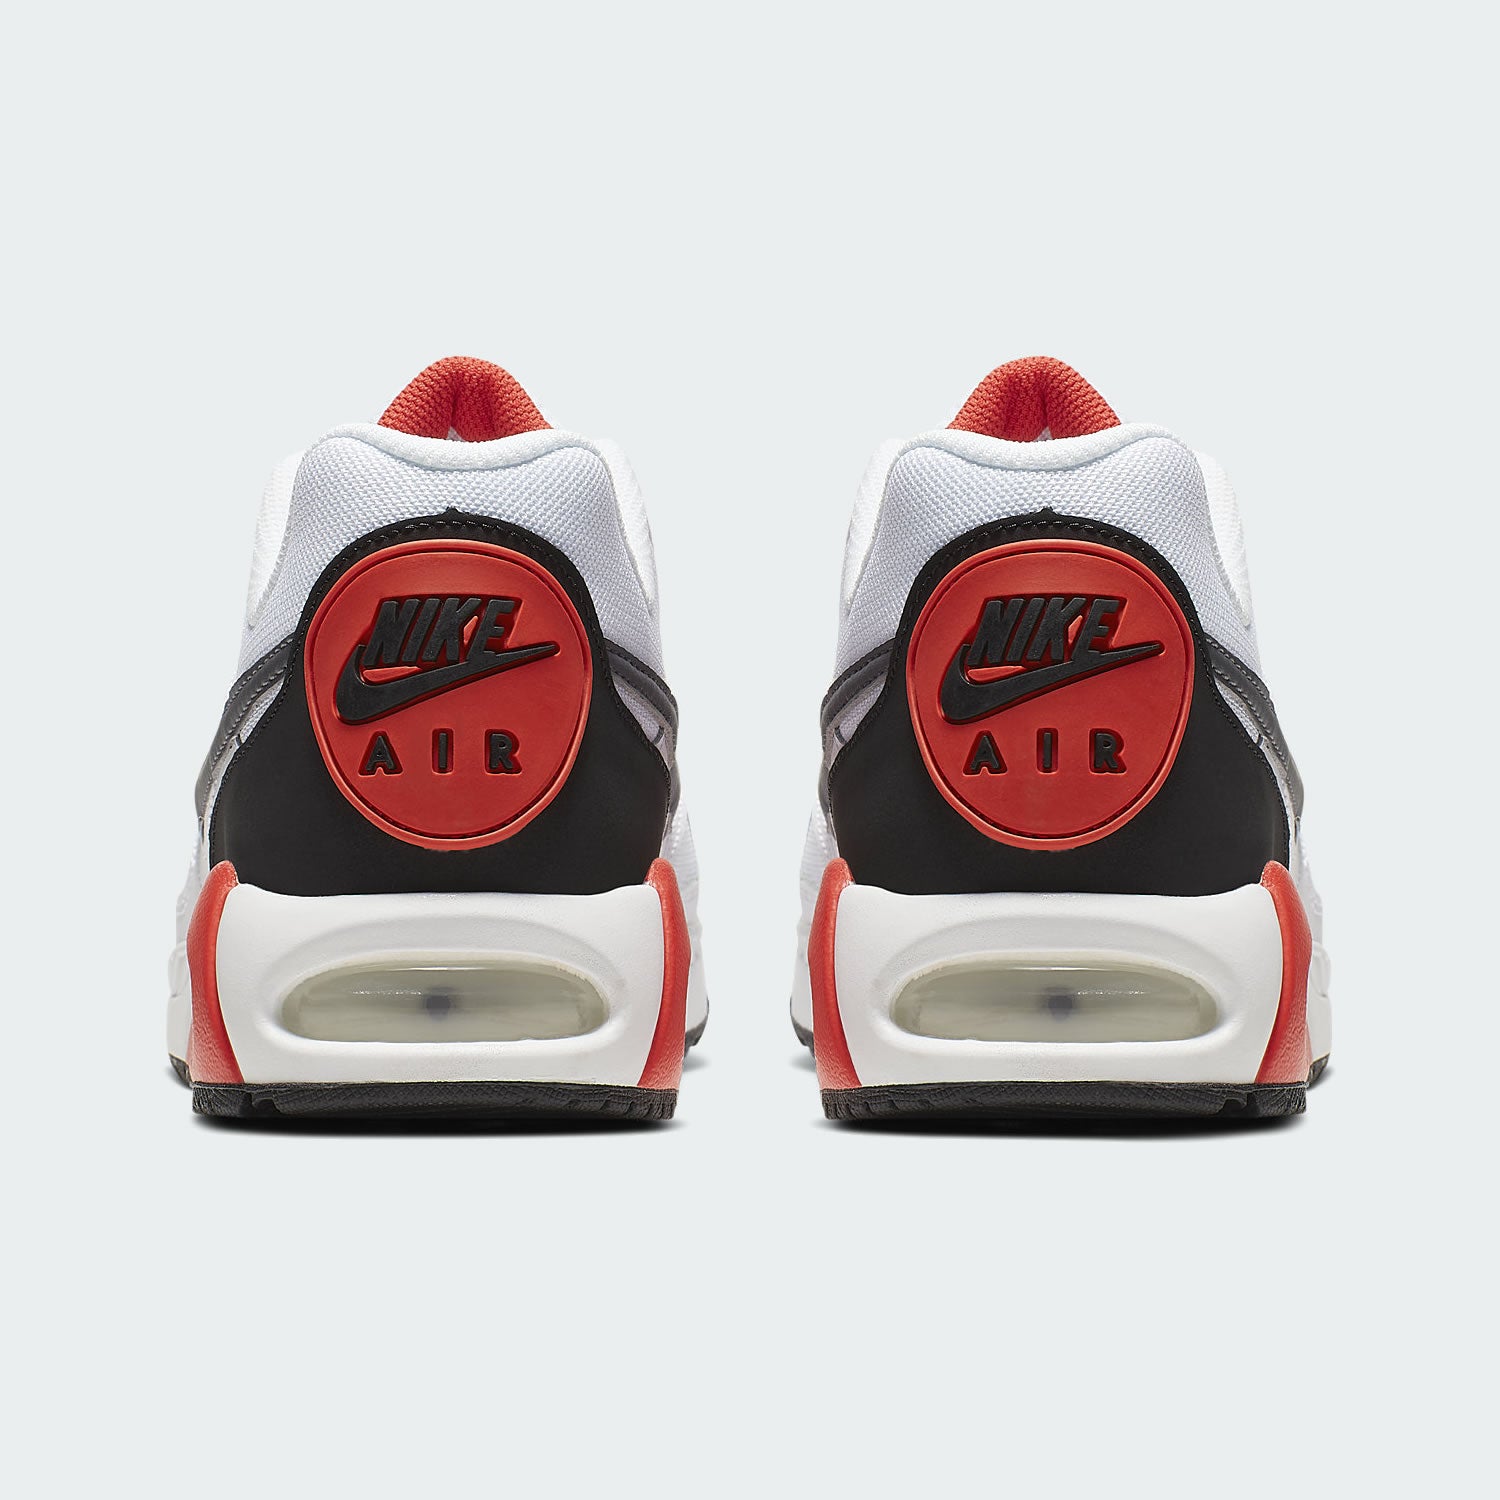 tradesports.co.uk Nike Men's Air Max IVO Shoes CD1540 100